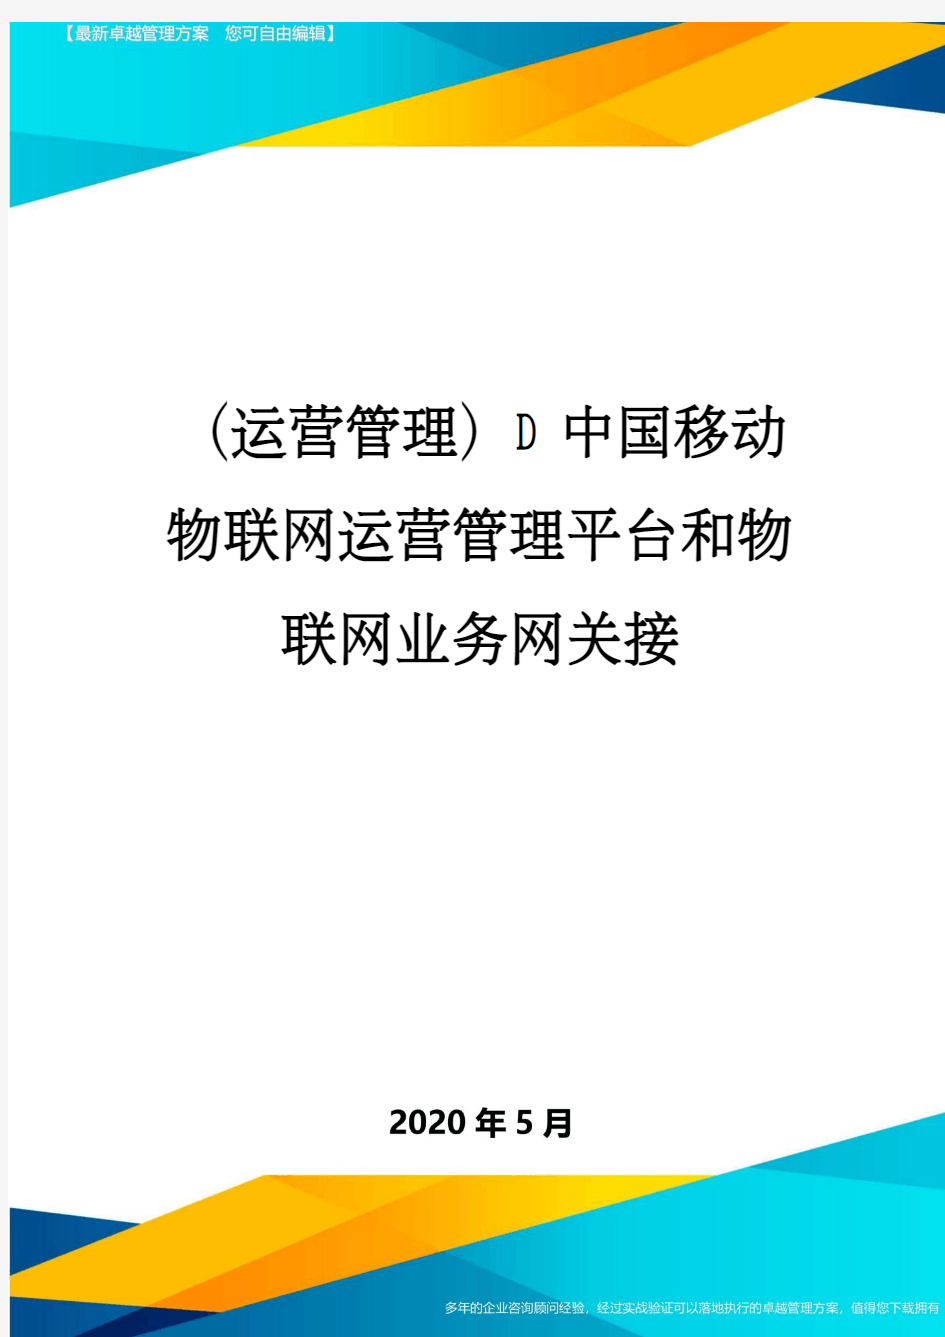 (运营管理)D中国移动物联网运营管理平台和物联网业务网关接